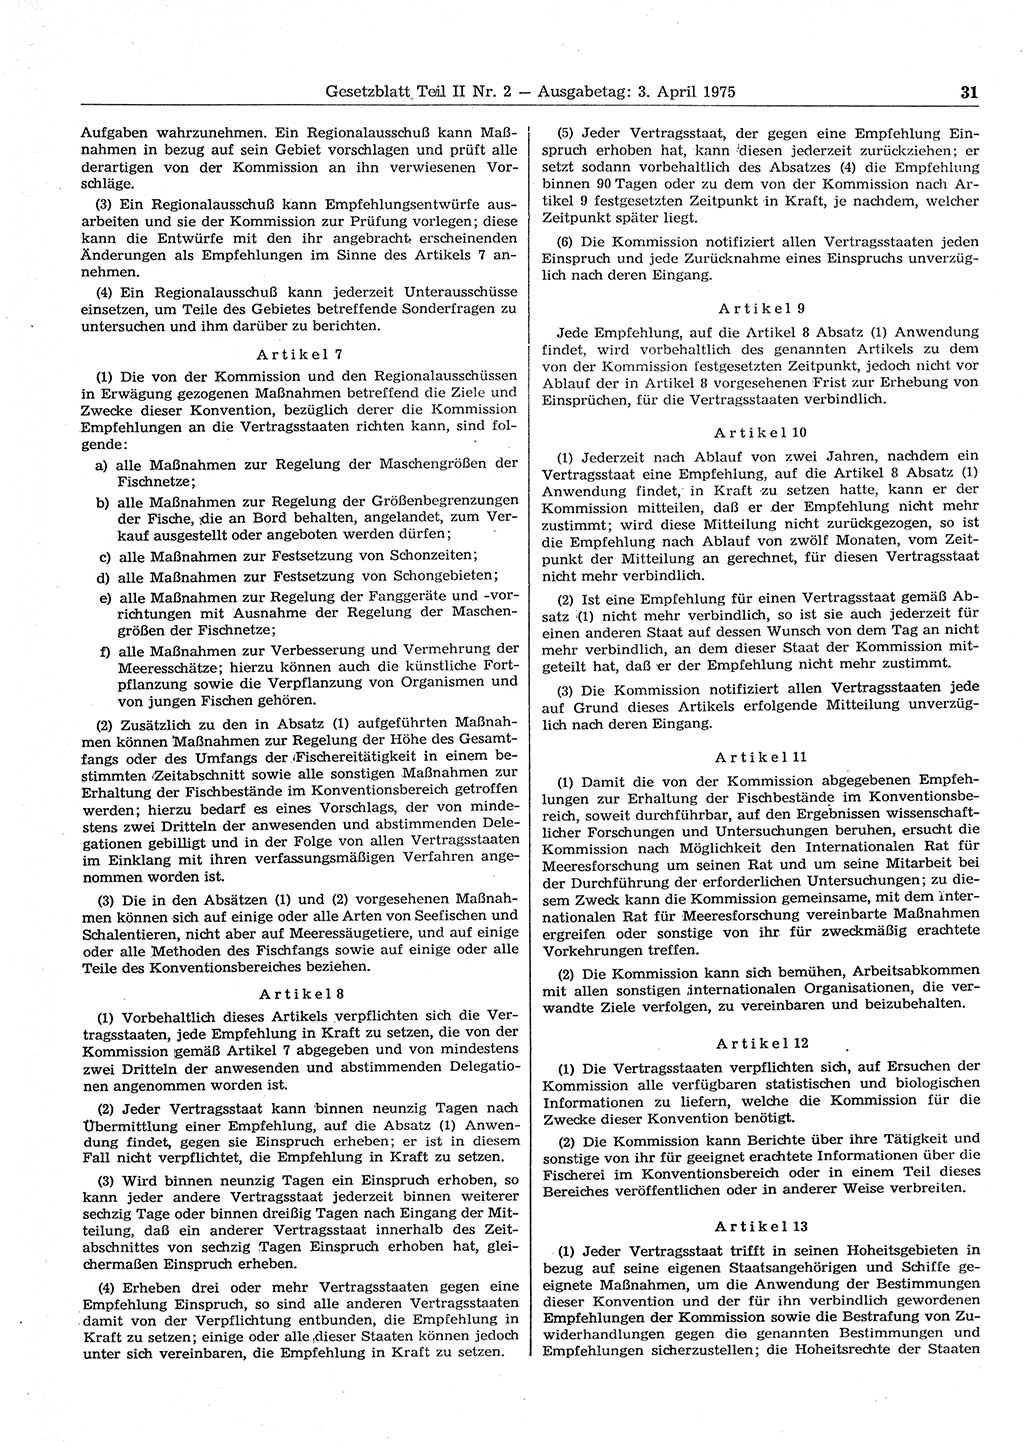 Gesetzblatt (GBl.) der Deutschen Demokratischen Republik (DDR) Teil ⅠⅠ 1975, Seite 31 (GBl. DDR ⅠⅠ 1975, S. 31)